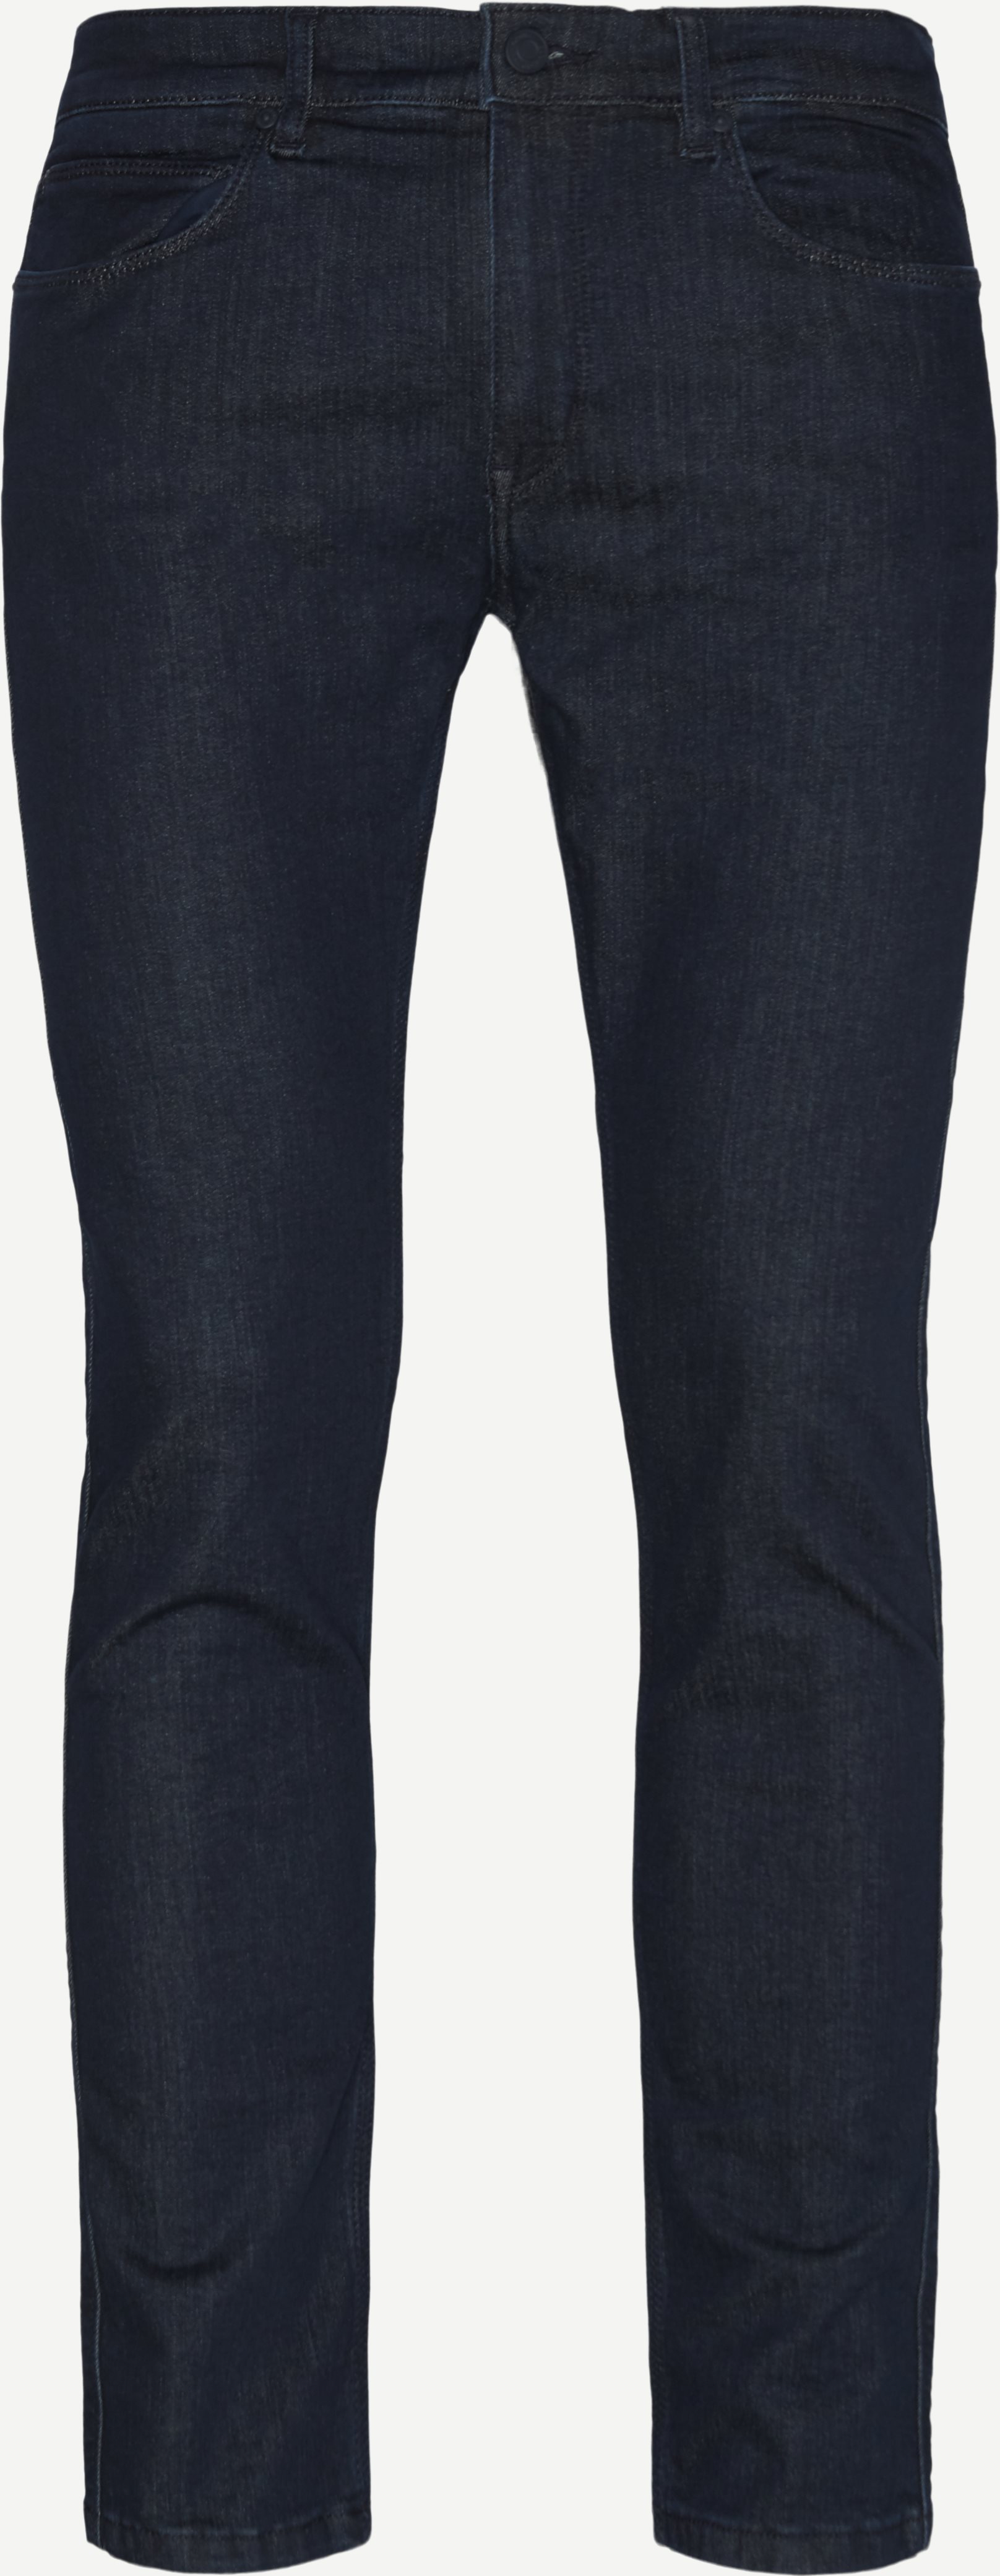 Hugo 734 Jeans - Jeans - Skinny fit - Denim